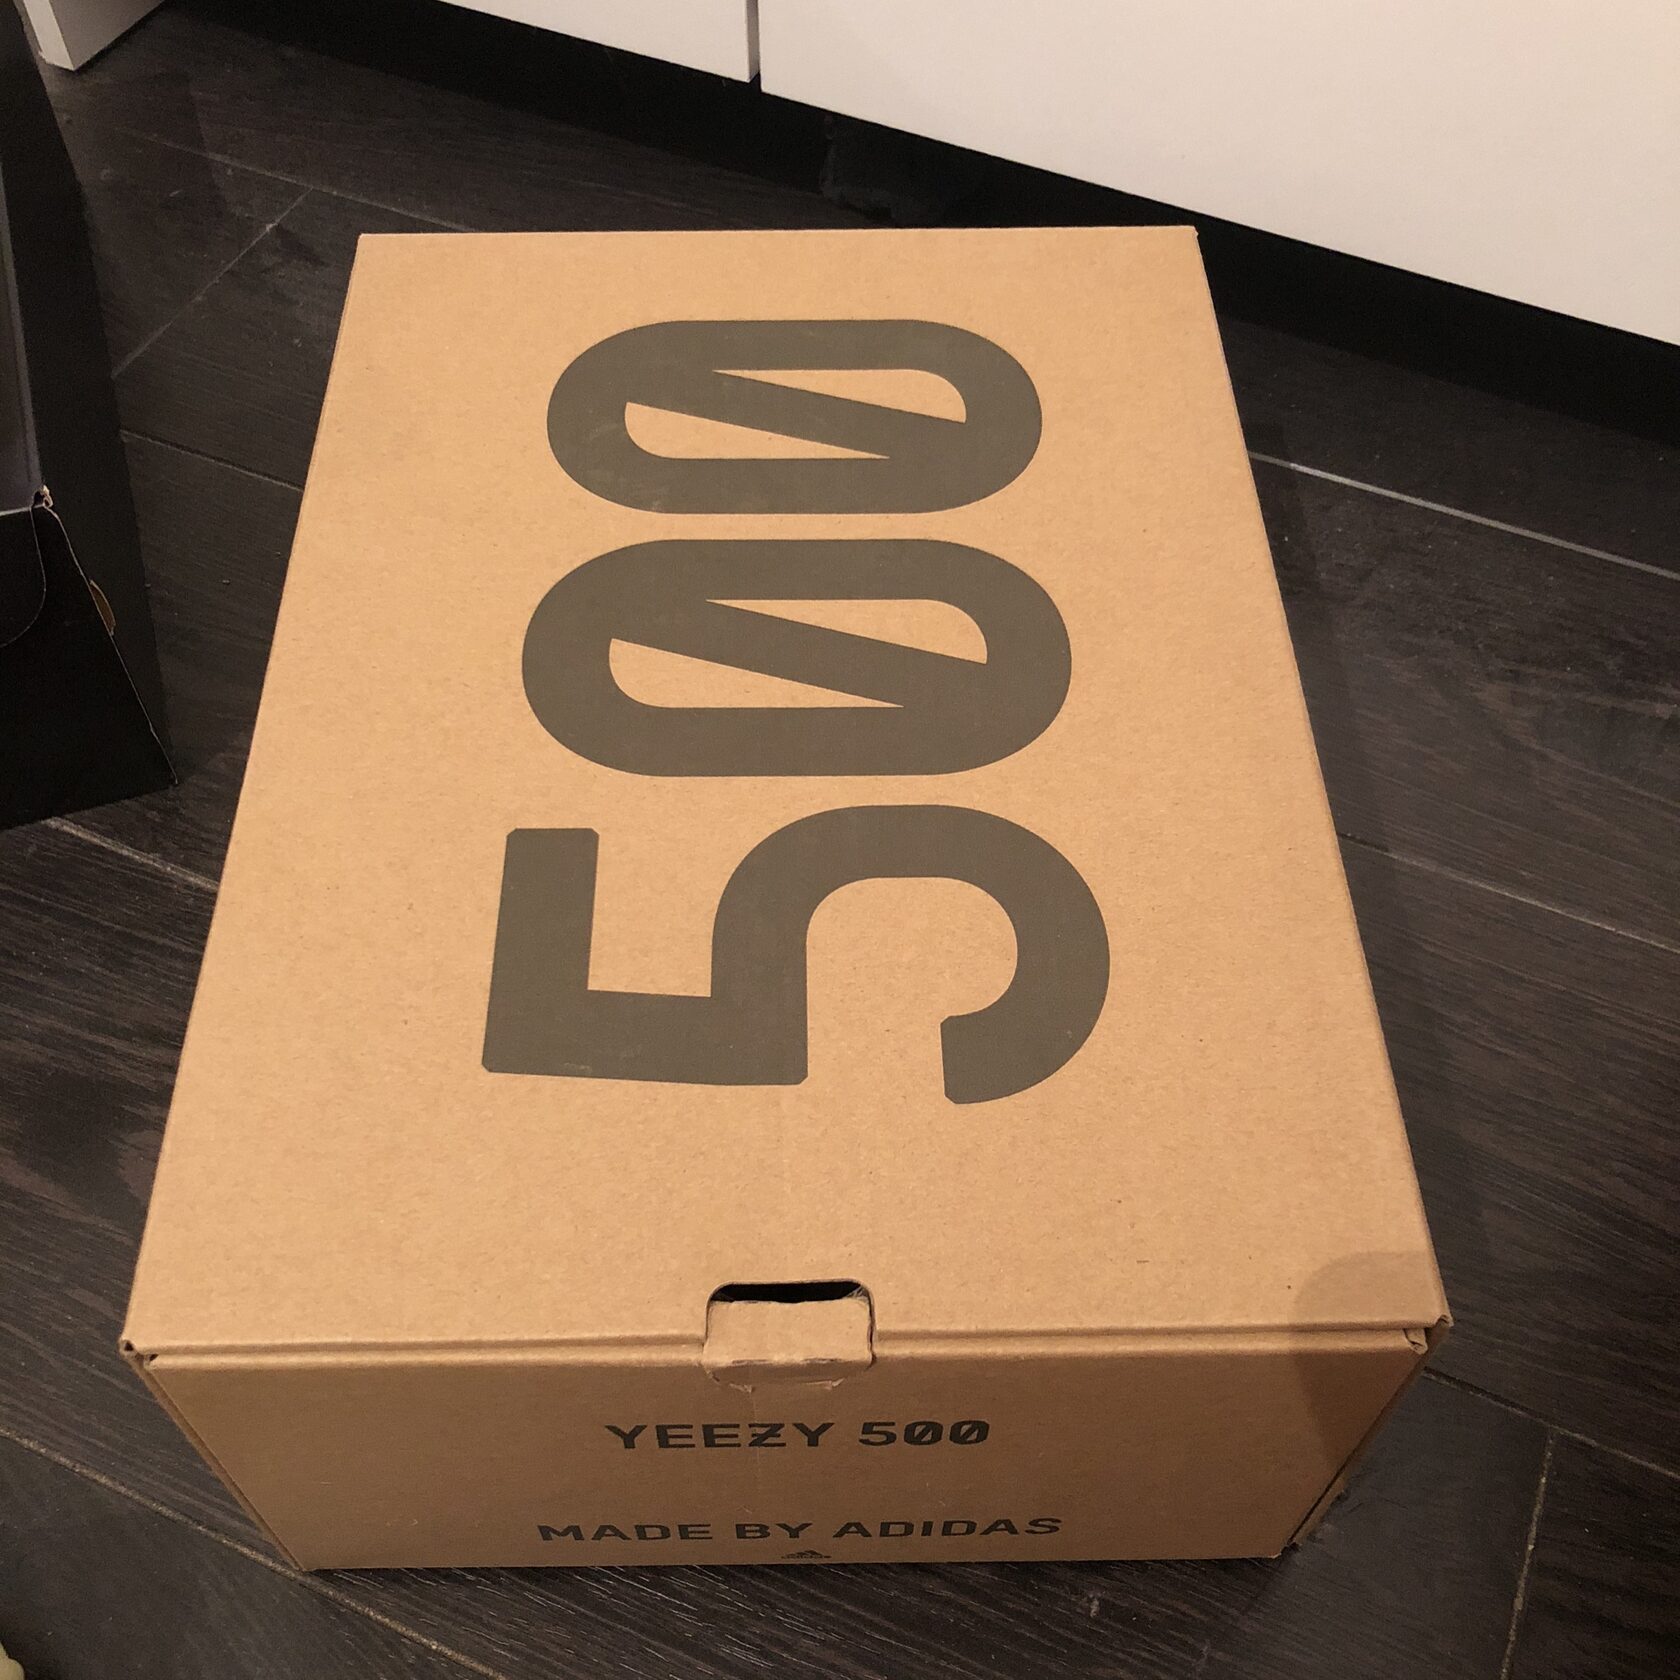 Изображение 5 | Как определить оригиналы Adidas Yeezy 500?<br>